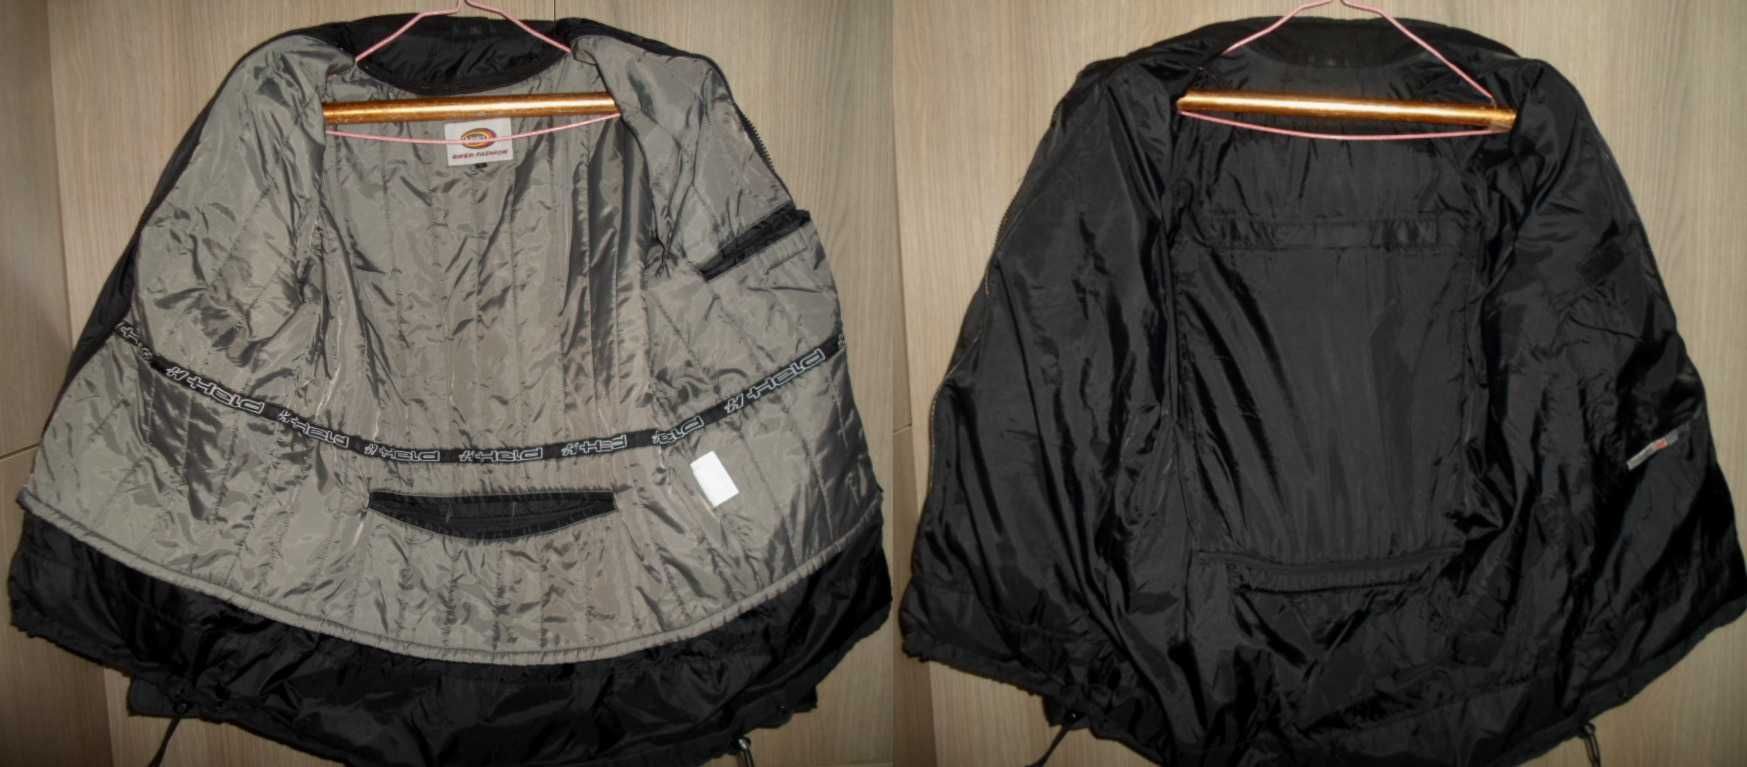 мото куртка мотокуртка HELD размер L-50/52